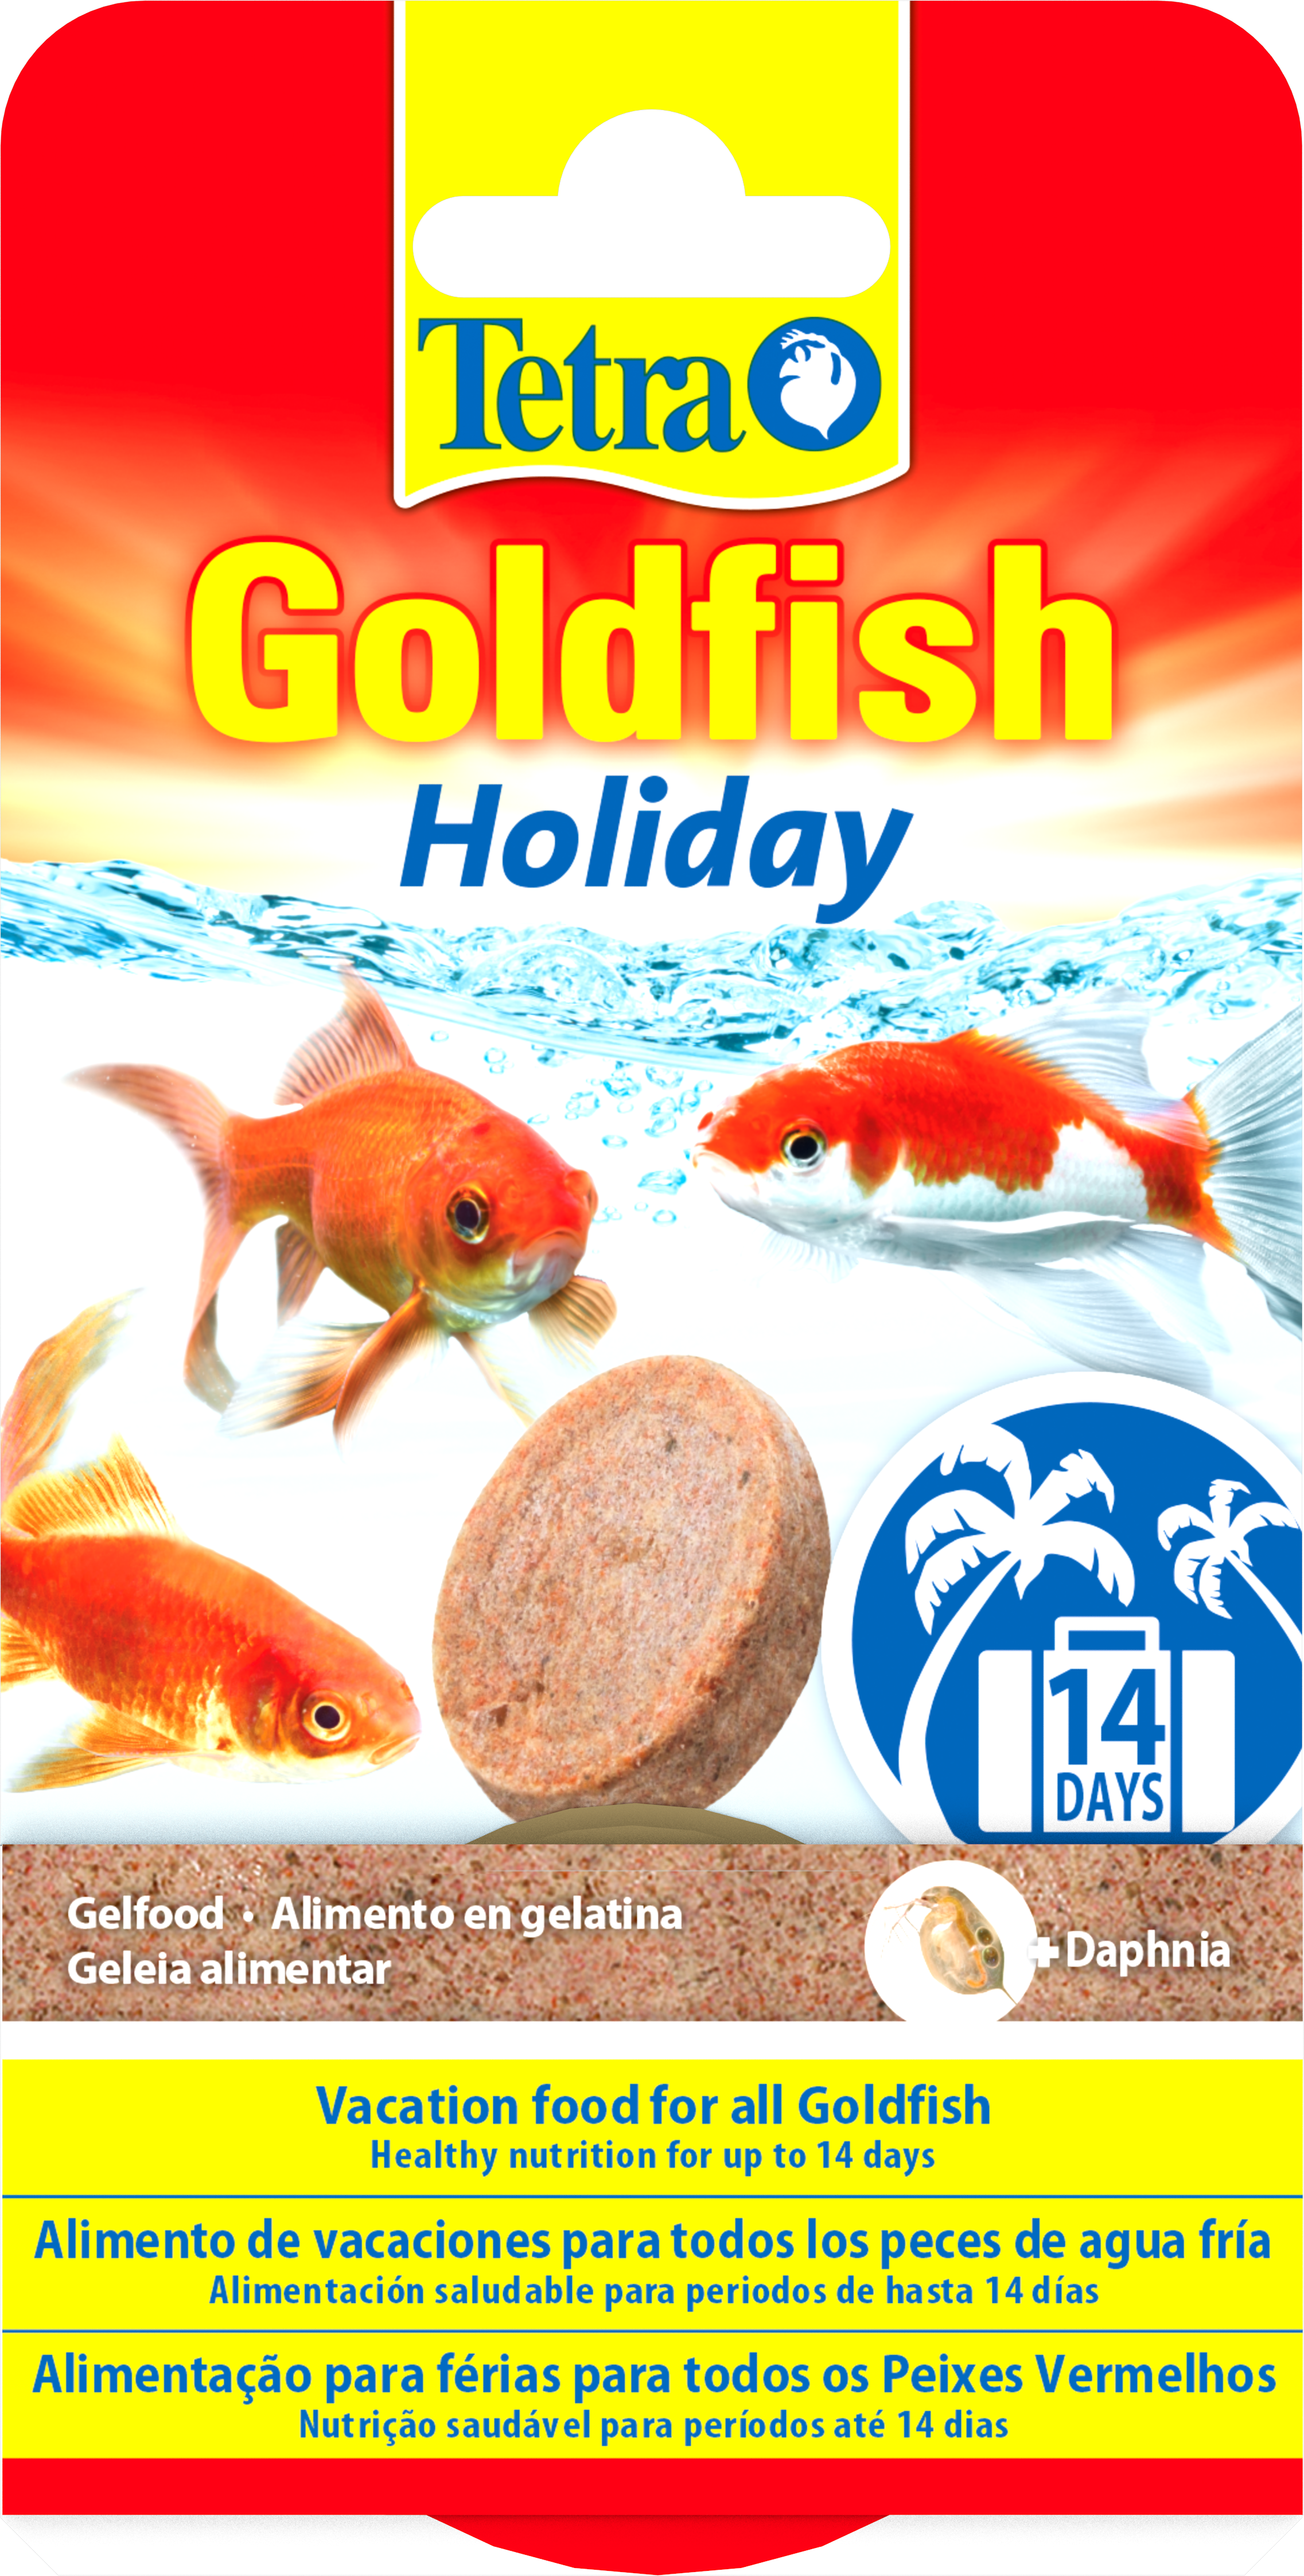 Tetra Goldfish Holiday: Tetra